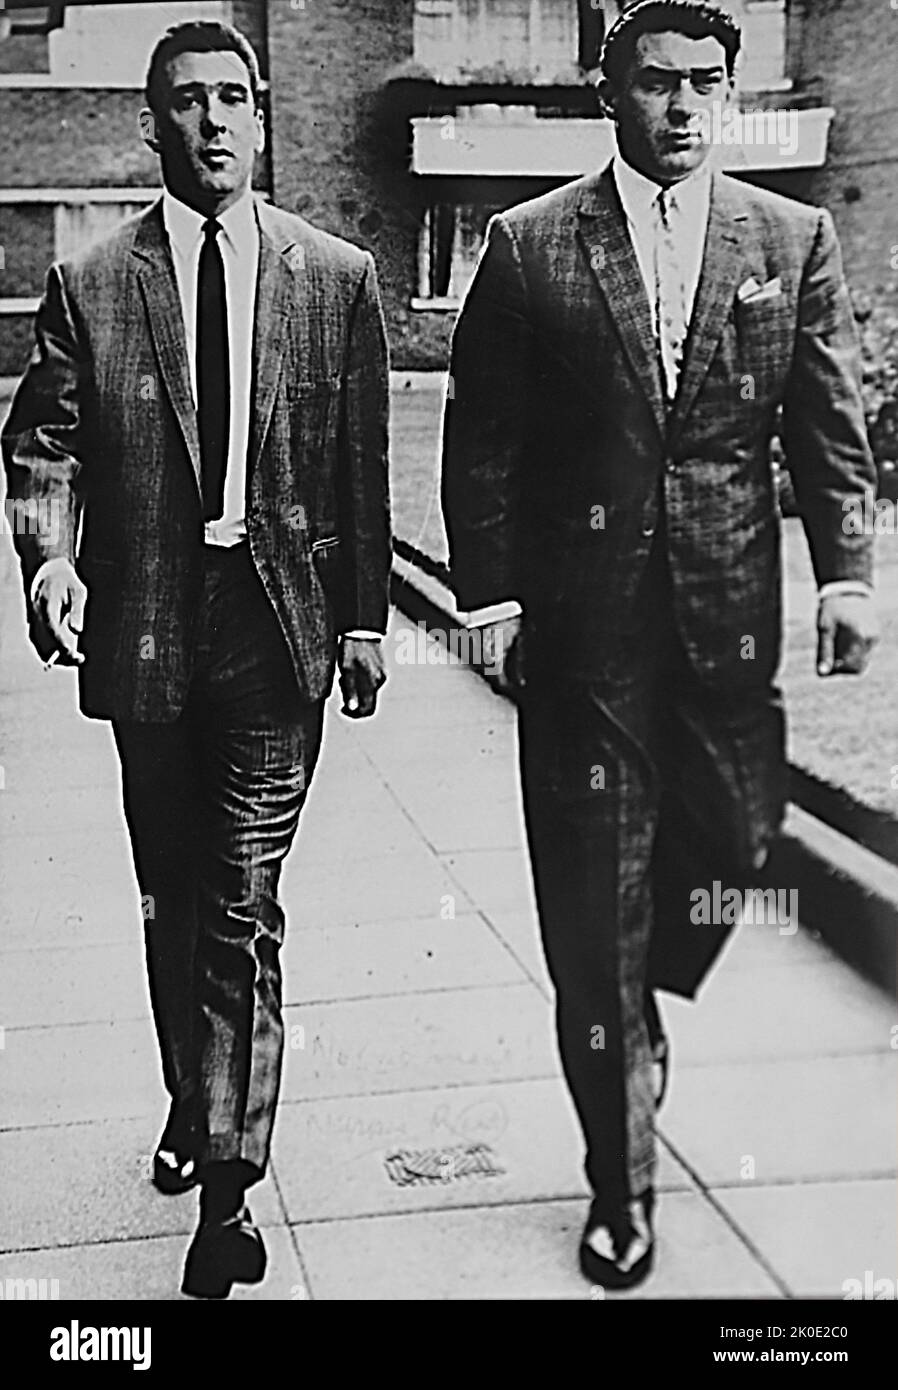 Ronnie e Reginald 'Reggie' Kray, fratelli gemelli, che erano criminali inglesi, i principali autori della criminalità organizzata nell'East End di Londra dalla fine degli anni '1950s al 1967. Con la loro banda, conosciuta come la ditta, i Krays sono stati coinvolti in omicidi, rapine a mano armata, arson, racchette di protezione e aggressioni. Foto Stock